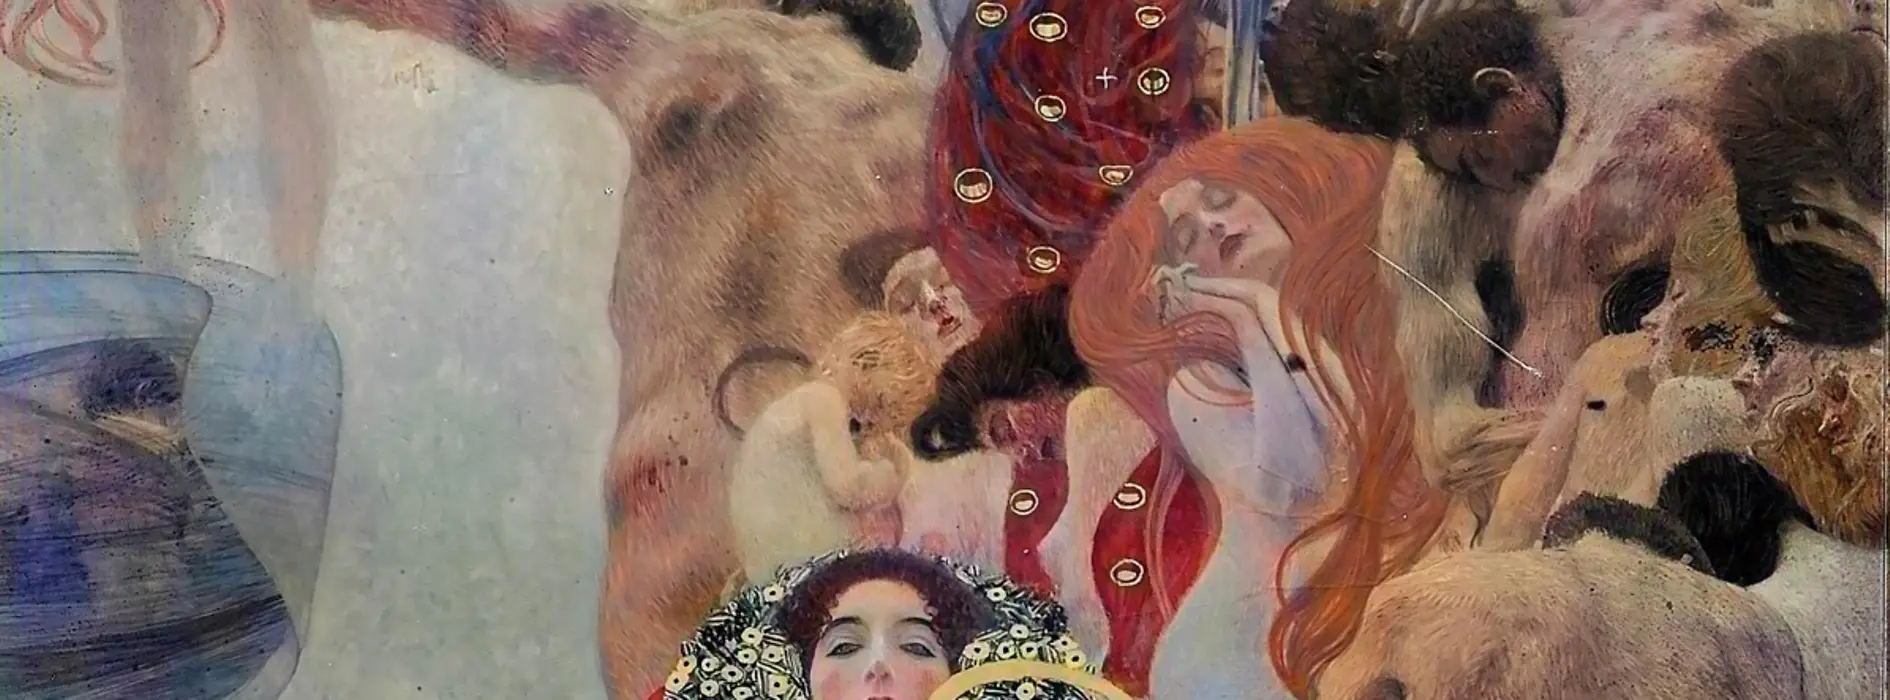 Klimt: Faculty image on Medicine